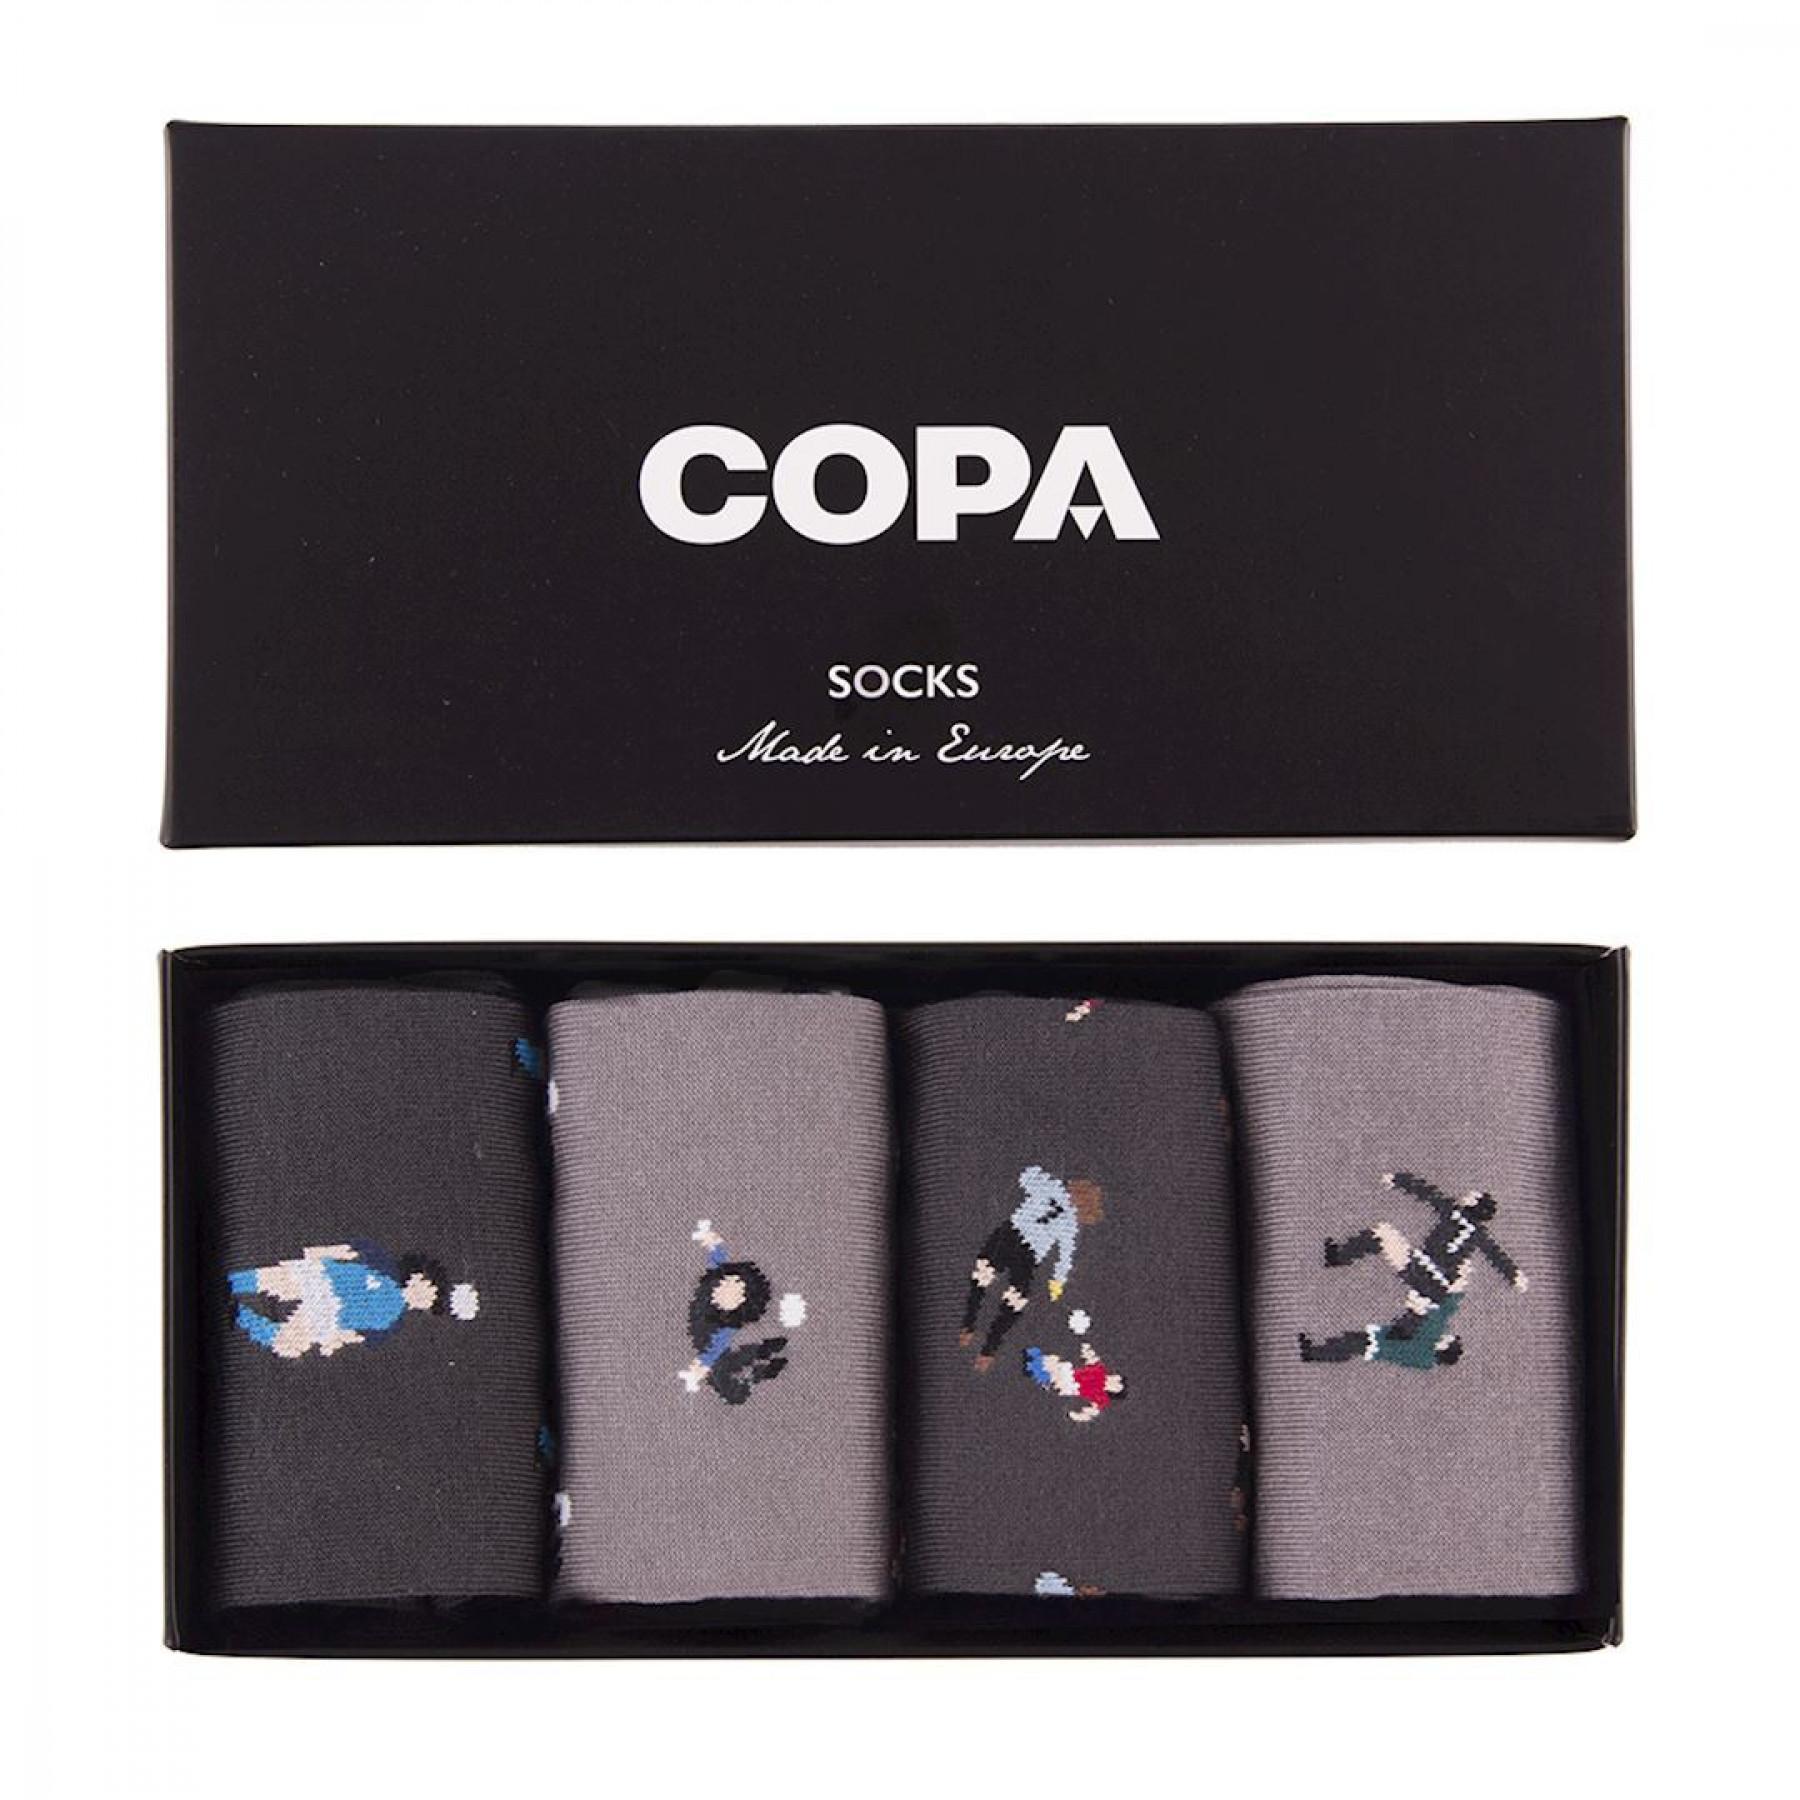 Coffret de chaussettes Copa Casual (4 paires)